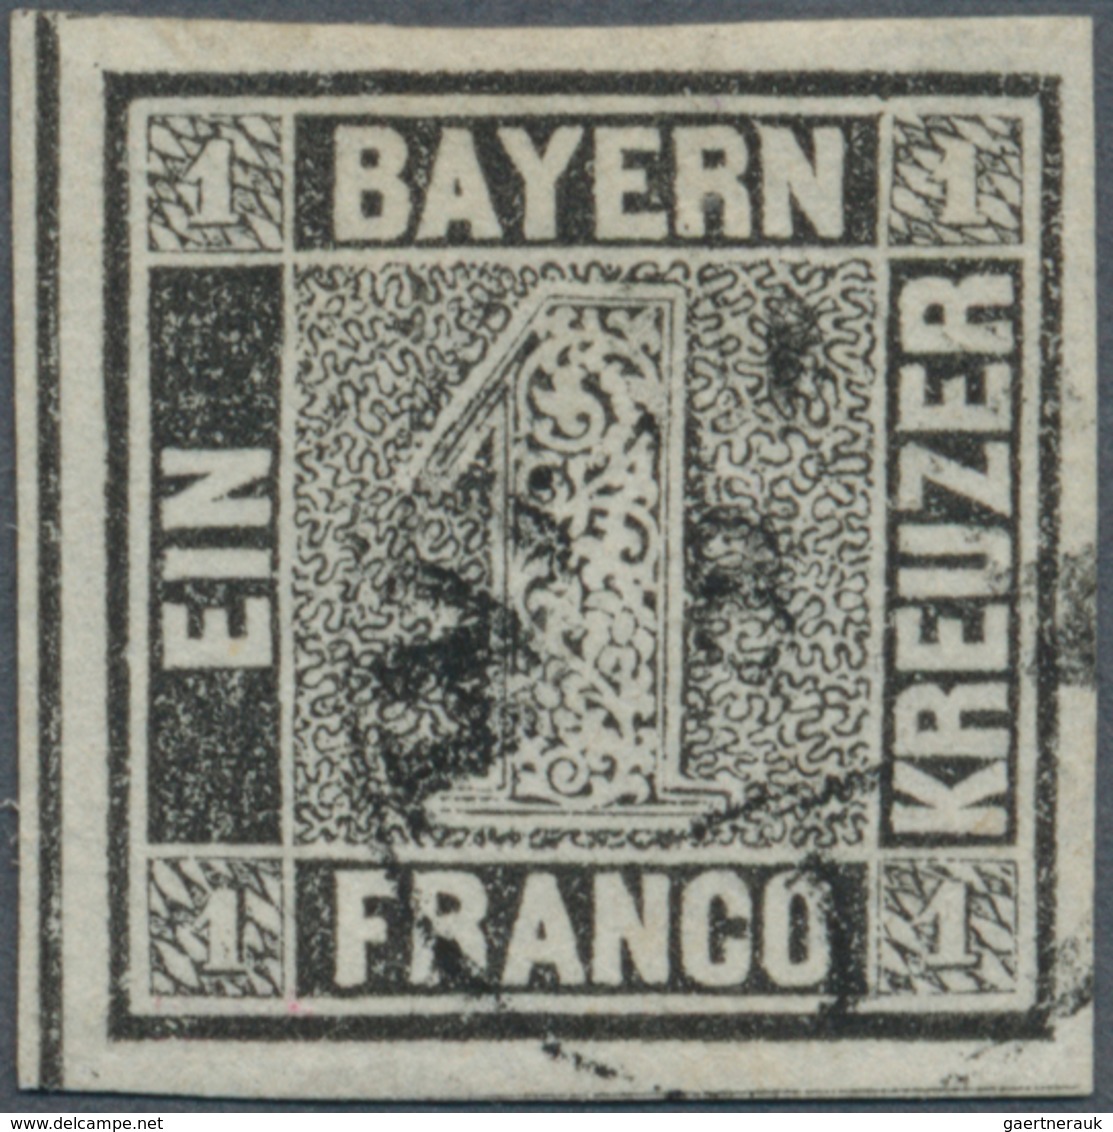 01152 Bayern - Marken Und Briefe: 1849, Schwarzer Einser 1 Kr. Schwarz, Platte 1 Mit Zartem Seltenem Finge - Other & Unclassified